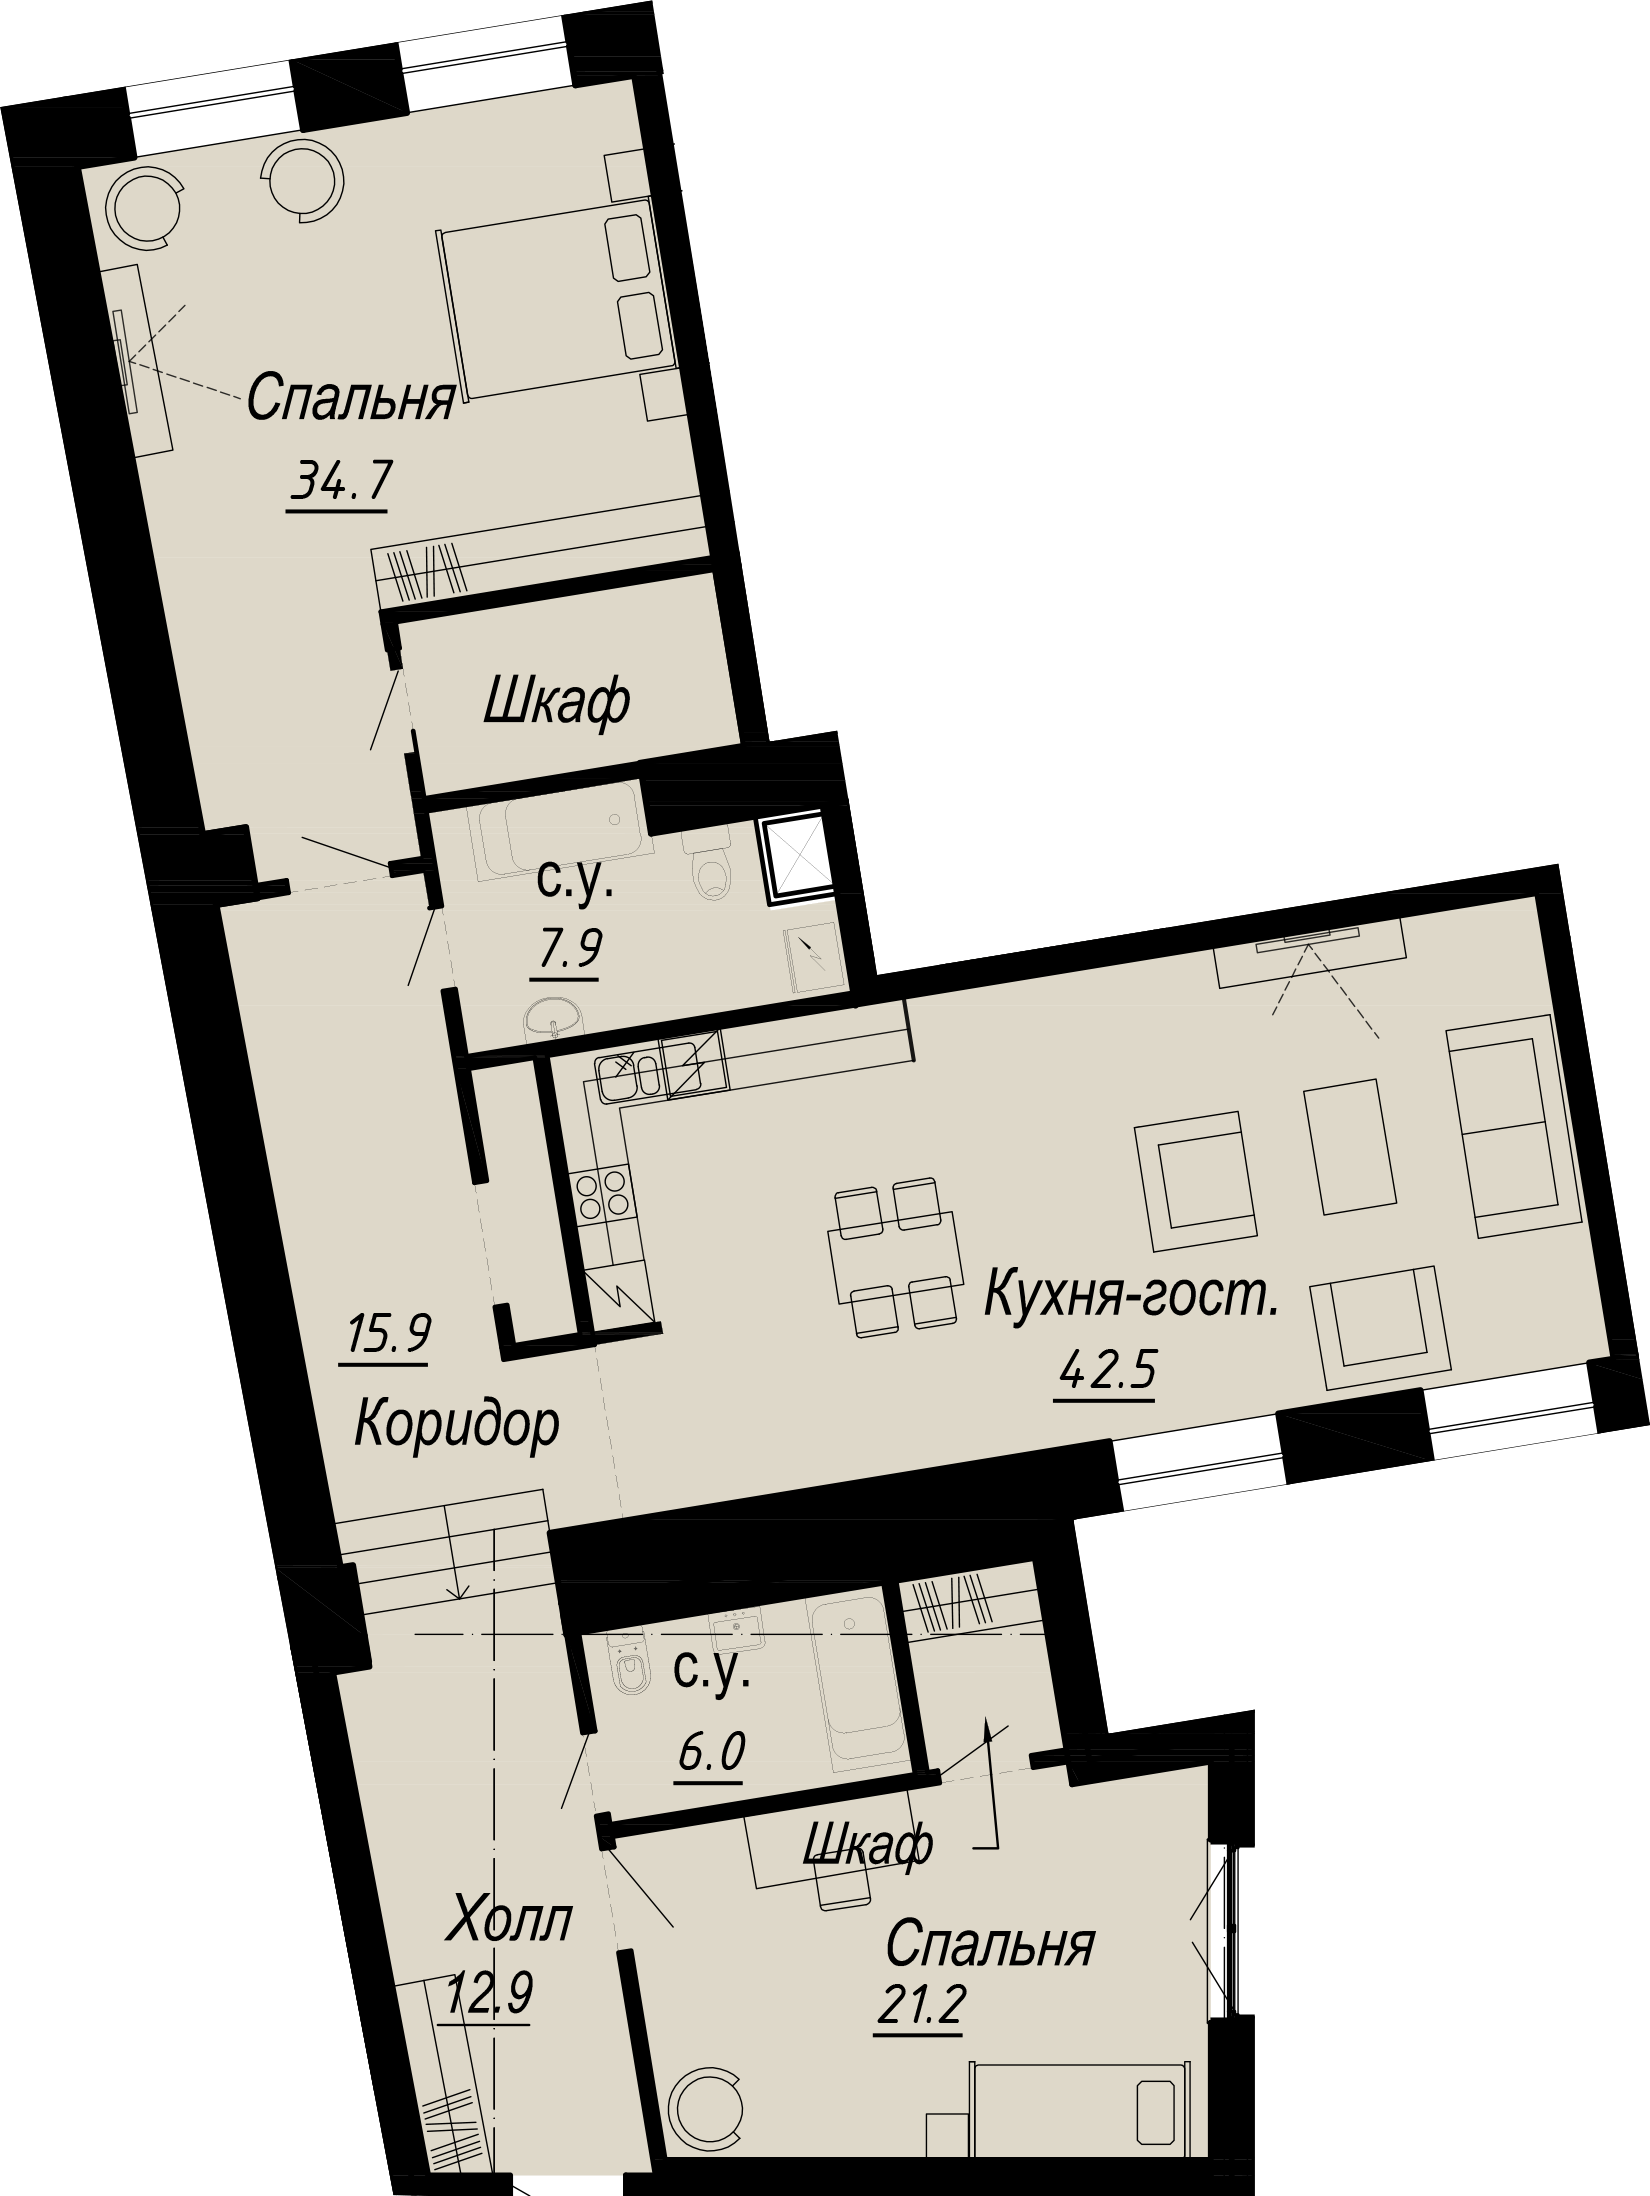 2-комнатная квартира  №14-3 в Meltzer Hall: 142.96 м², этаж 3 - купить в Санкт-Петербурге